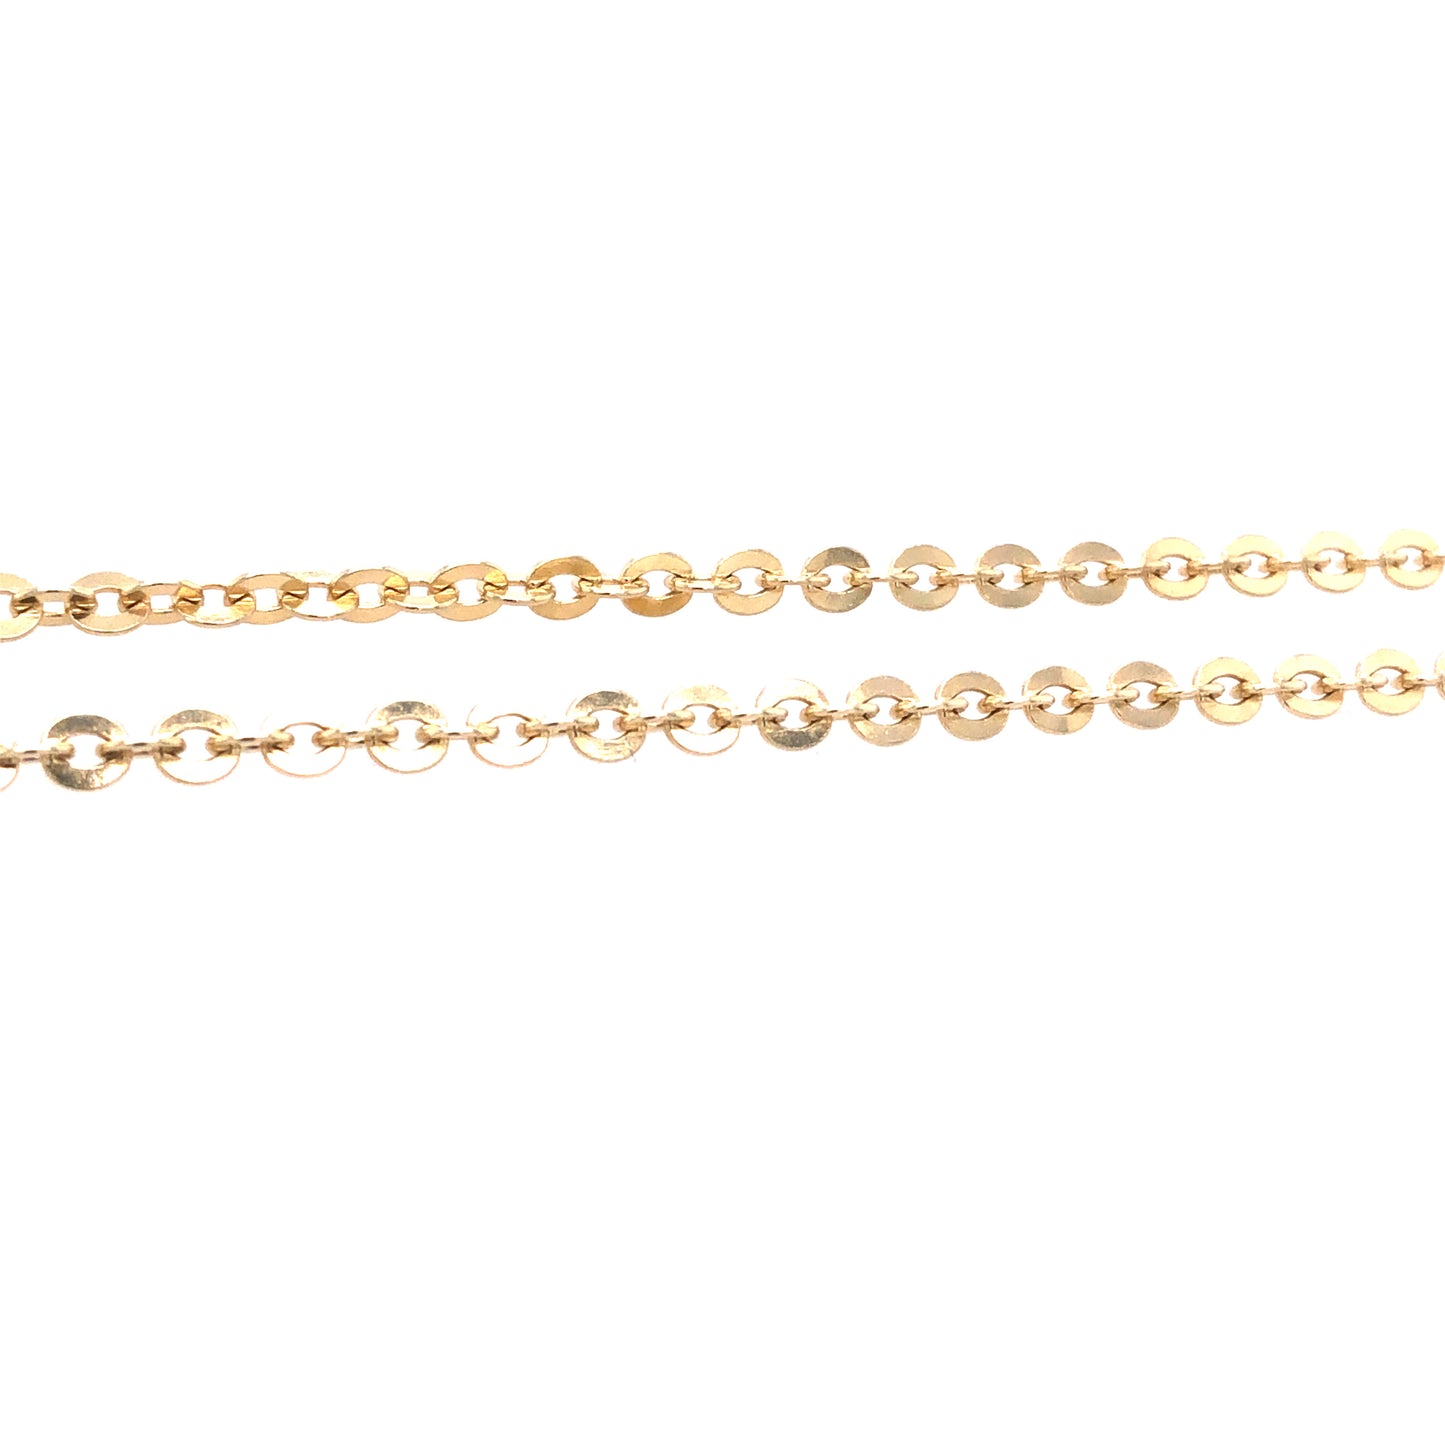 Halskette Gold 750 / 18k Rundankerkette Goldkette Anker